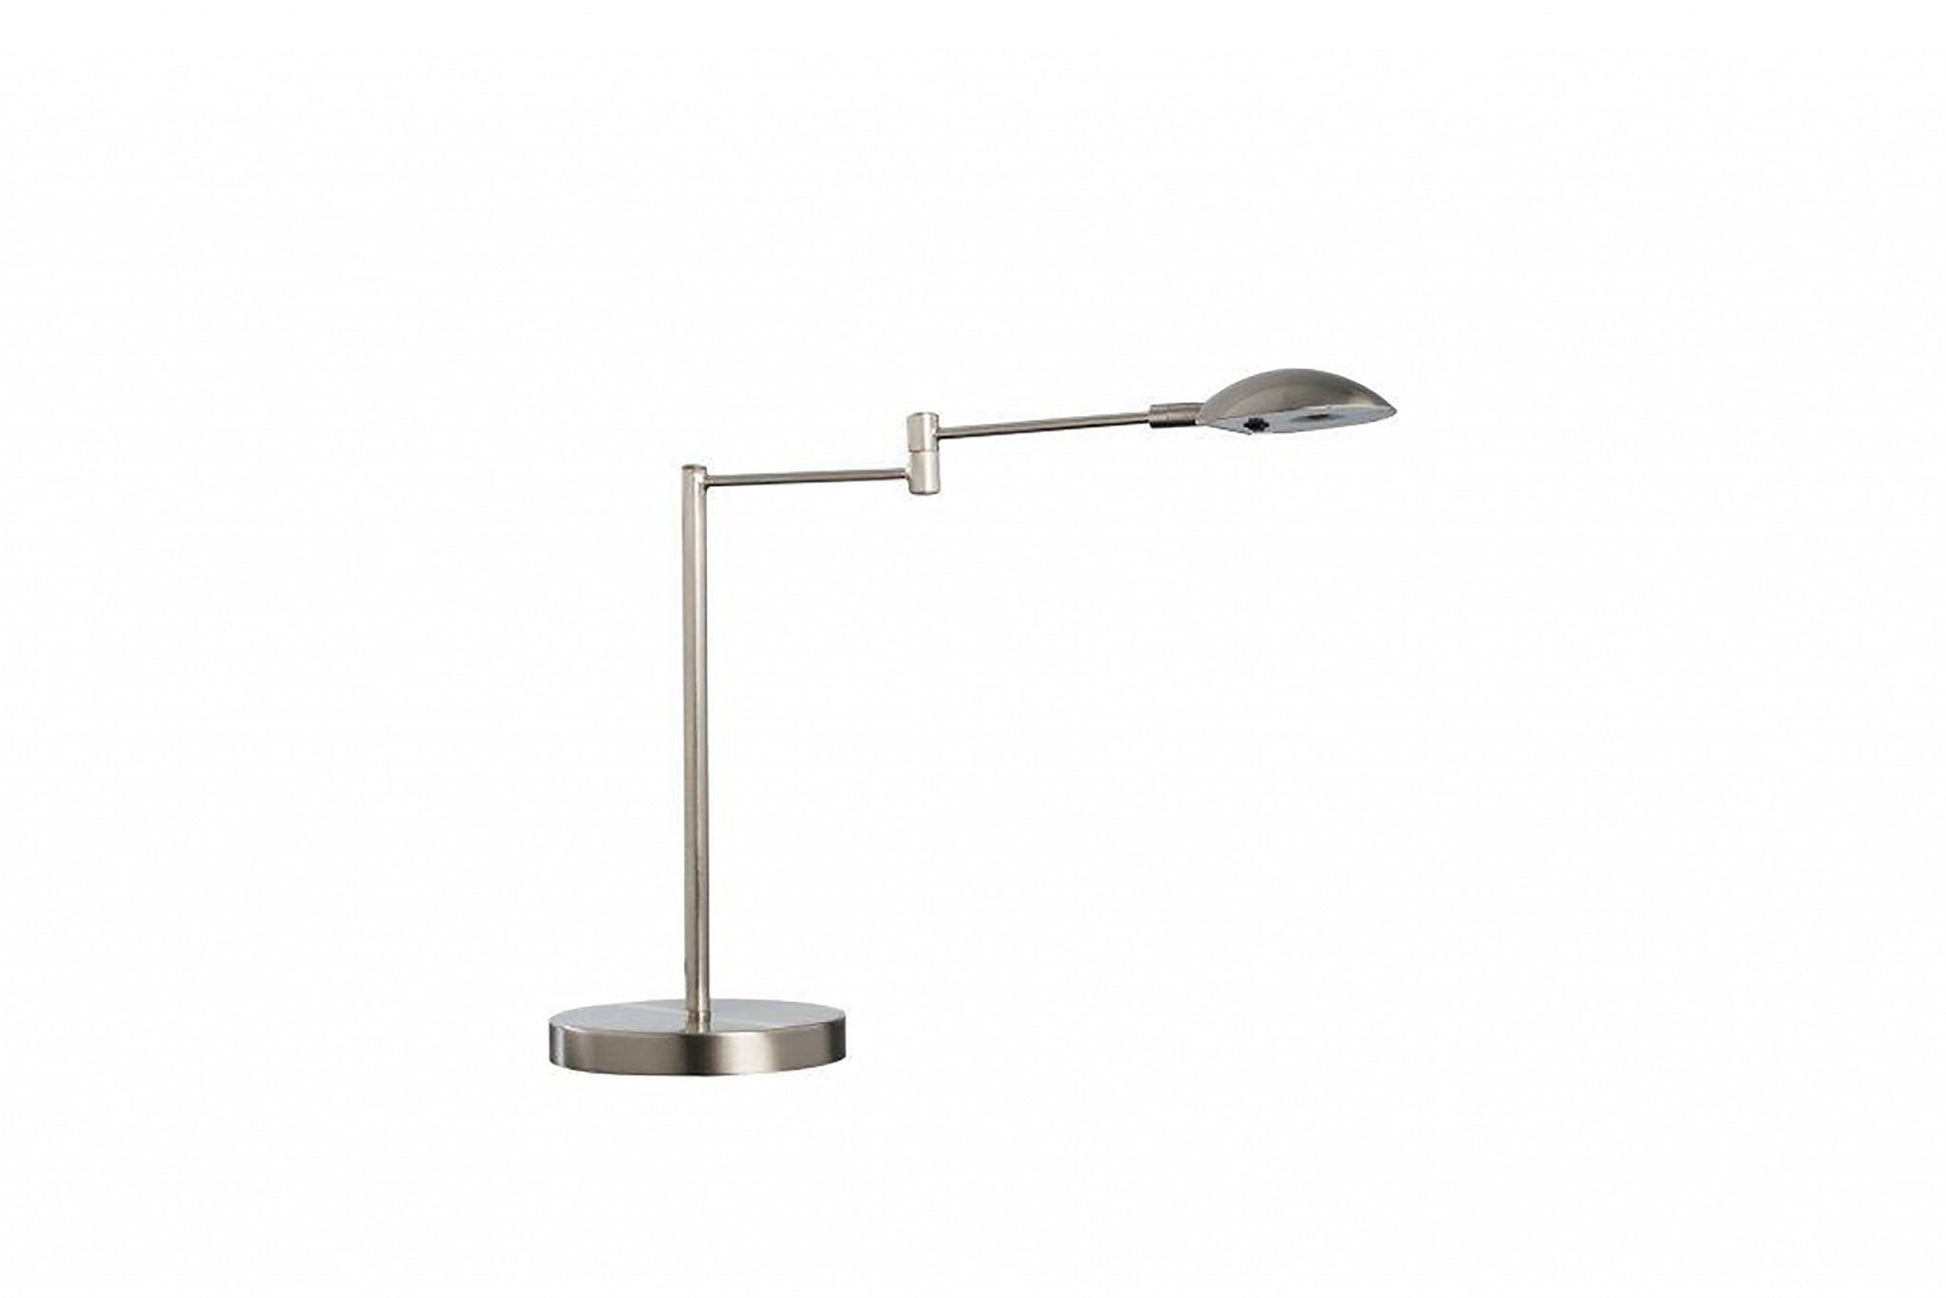 Minimalist Silver Metal Swing Arm Desk Lamp By Homeroots | Desk Lamps | Modishstore - 3